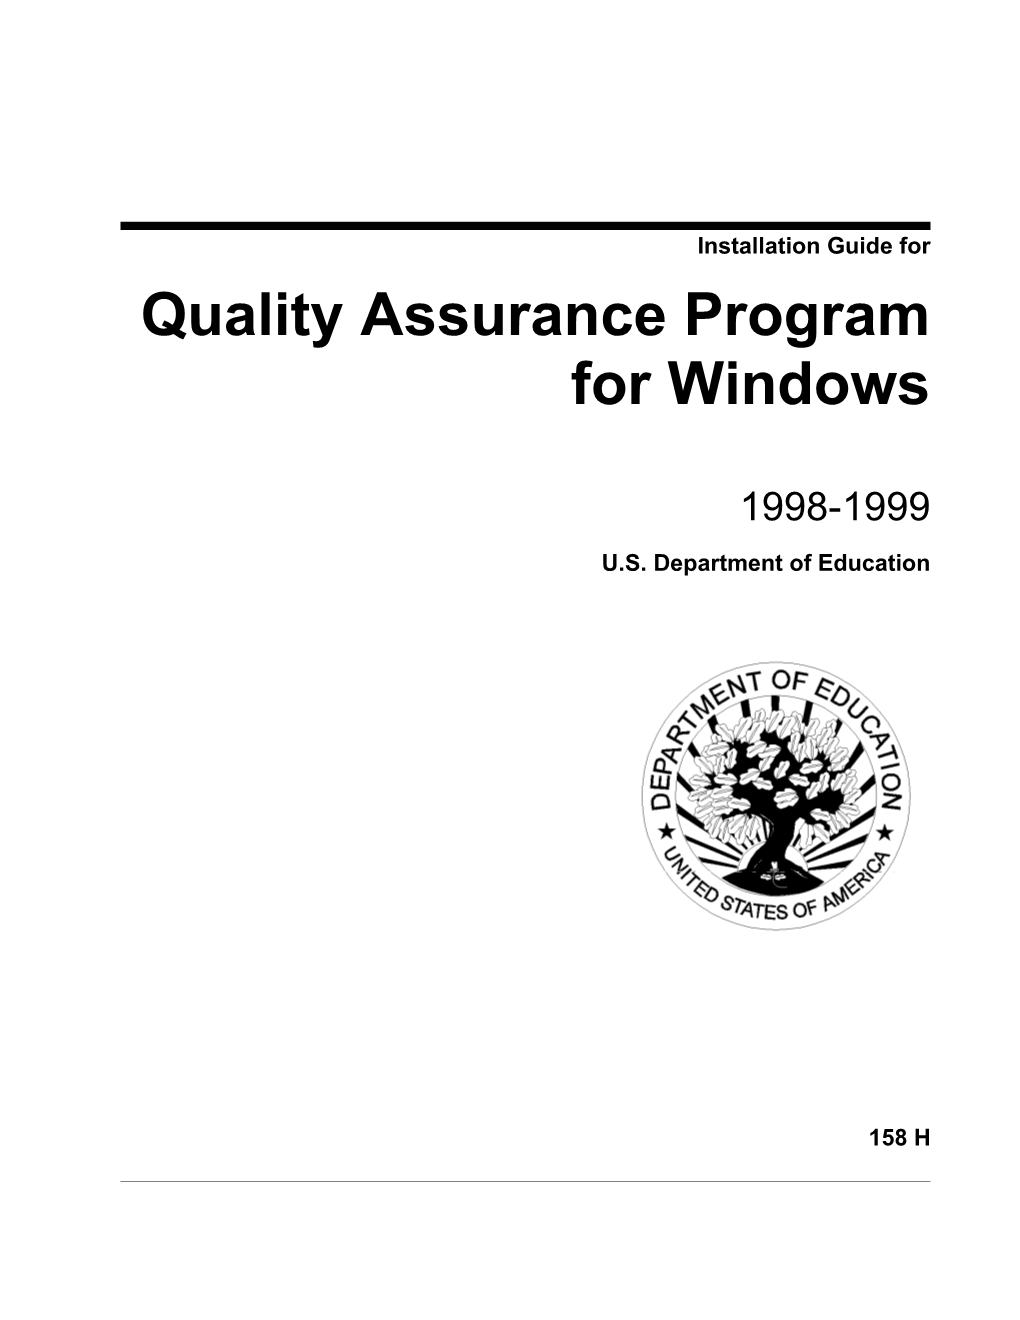 Quality Assurance Program for Windows